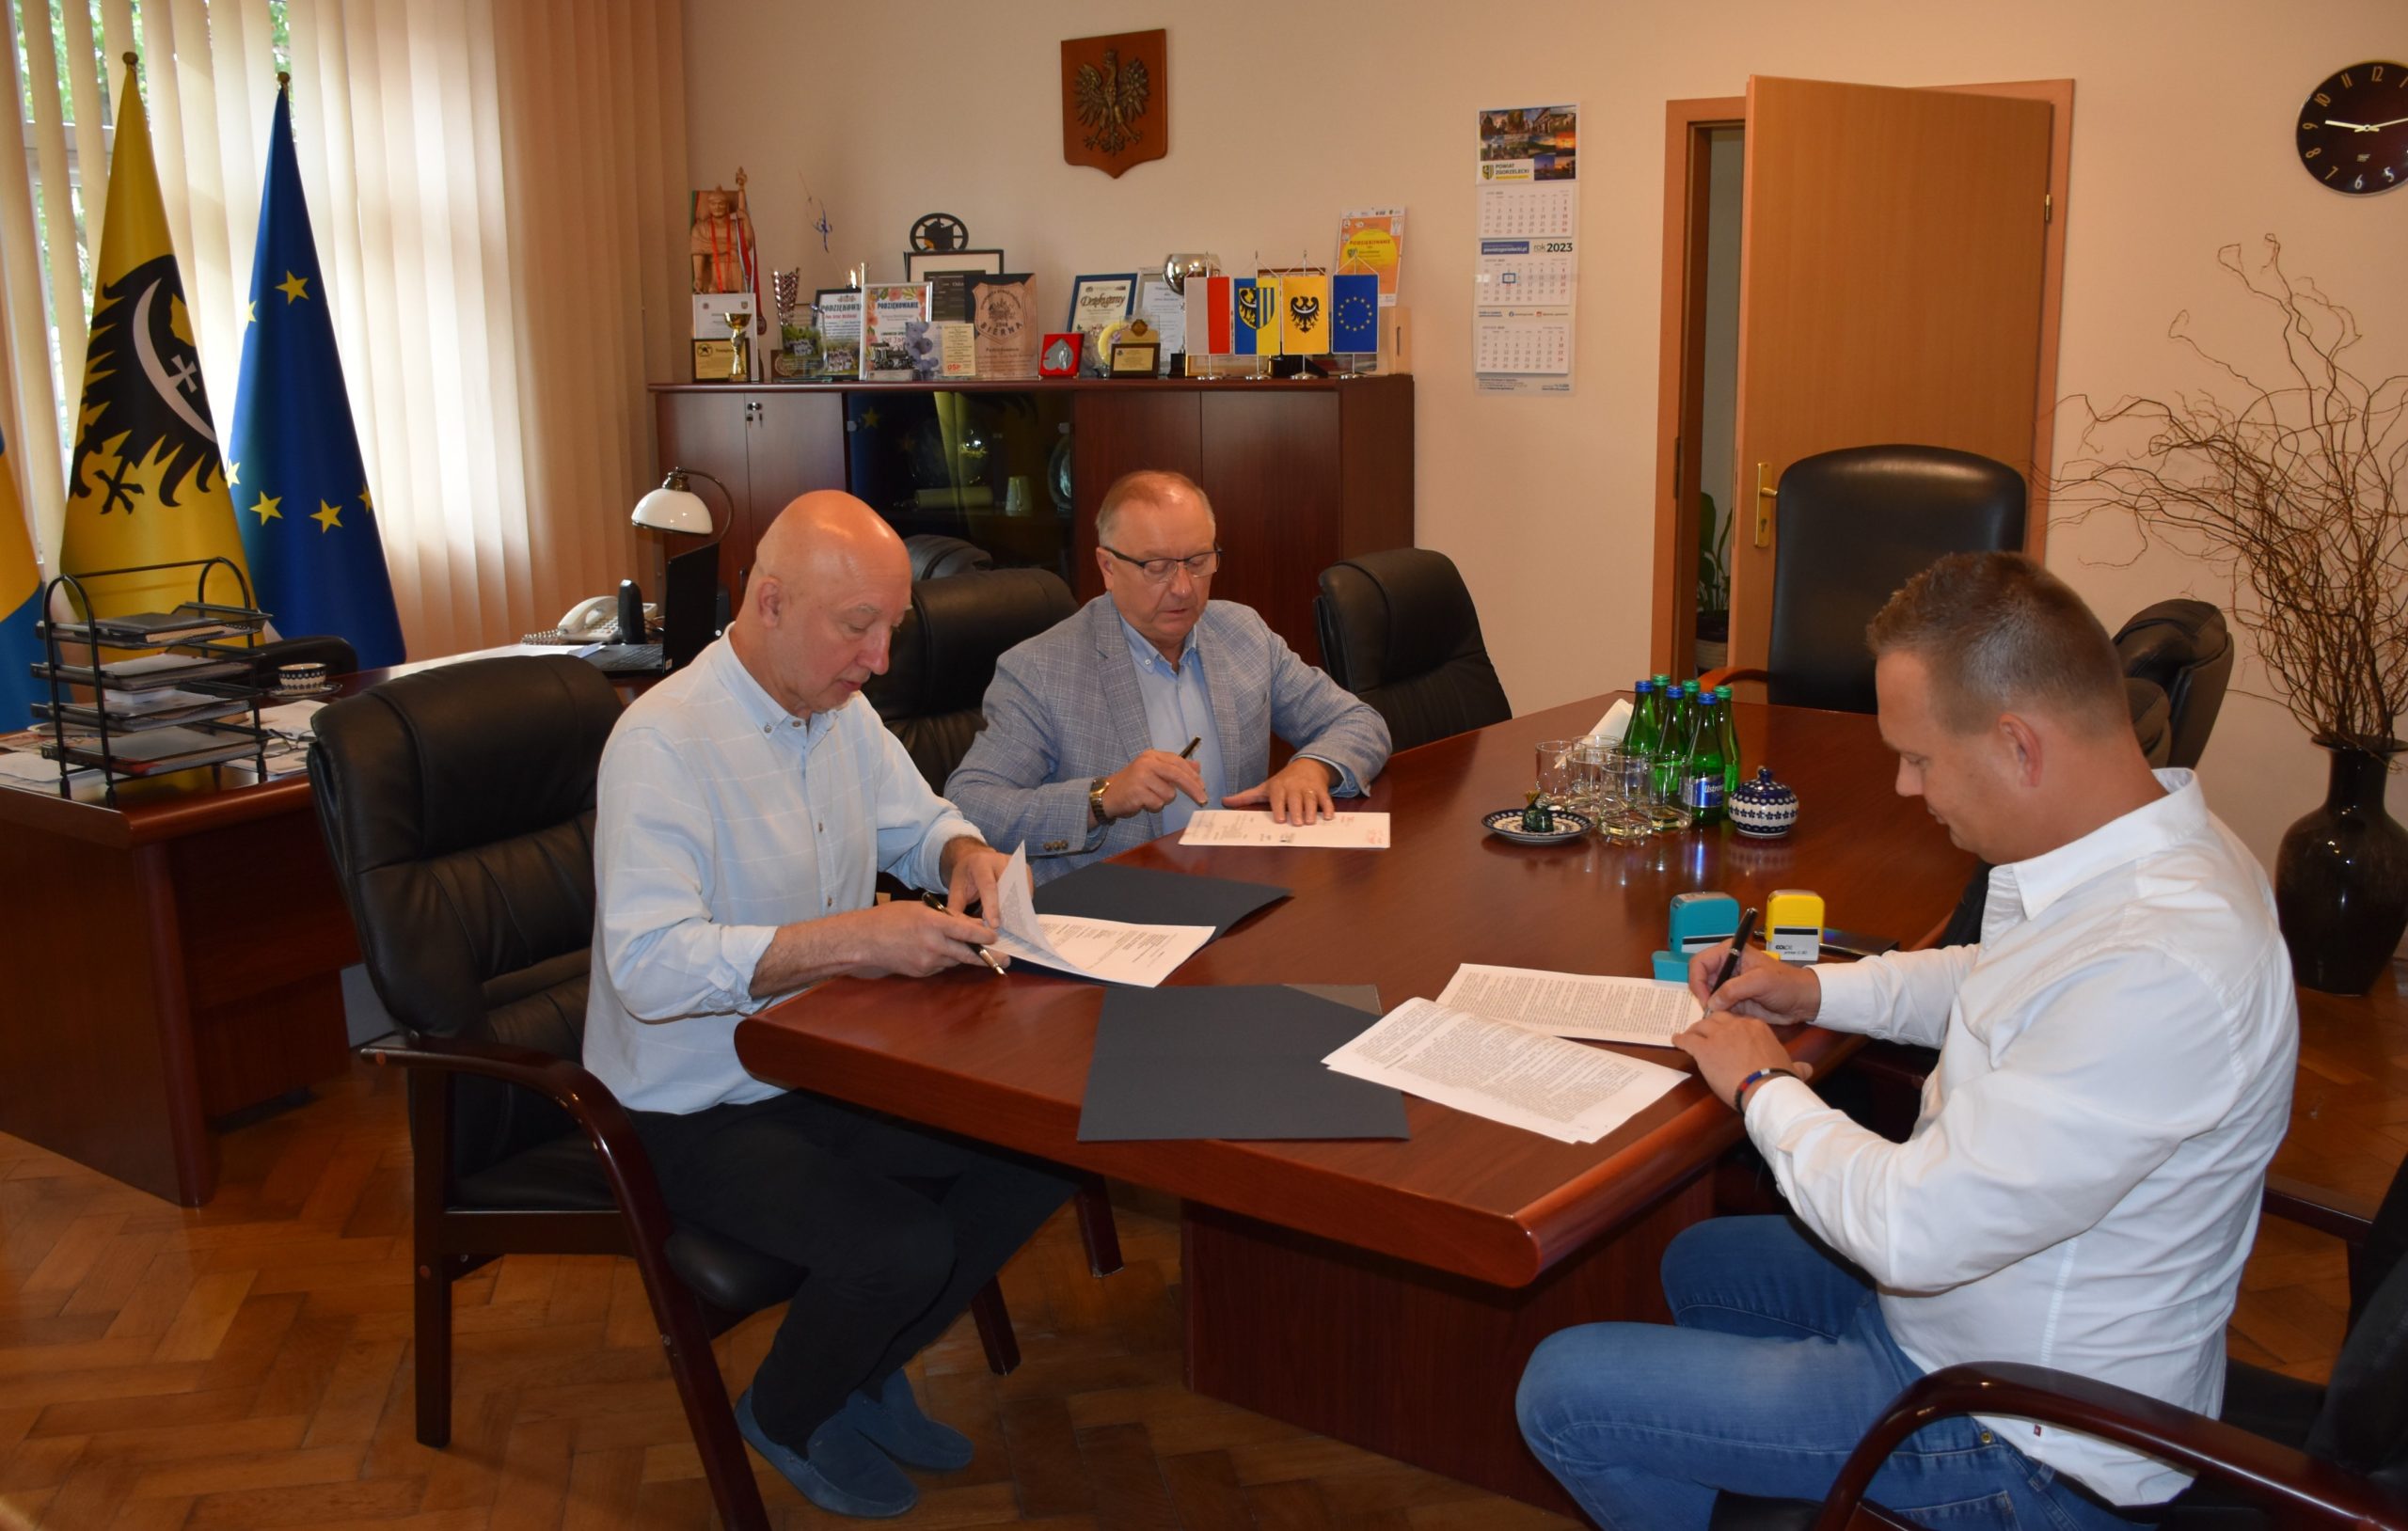 Podpisano umowę na montaż instalacji fotowoltaicznych dla DPS “Ostoja” i Powiatowego Urzędu Pracy w Zgorzelcu